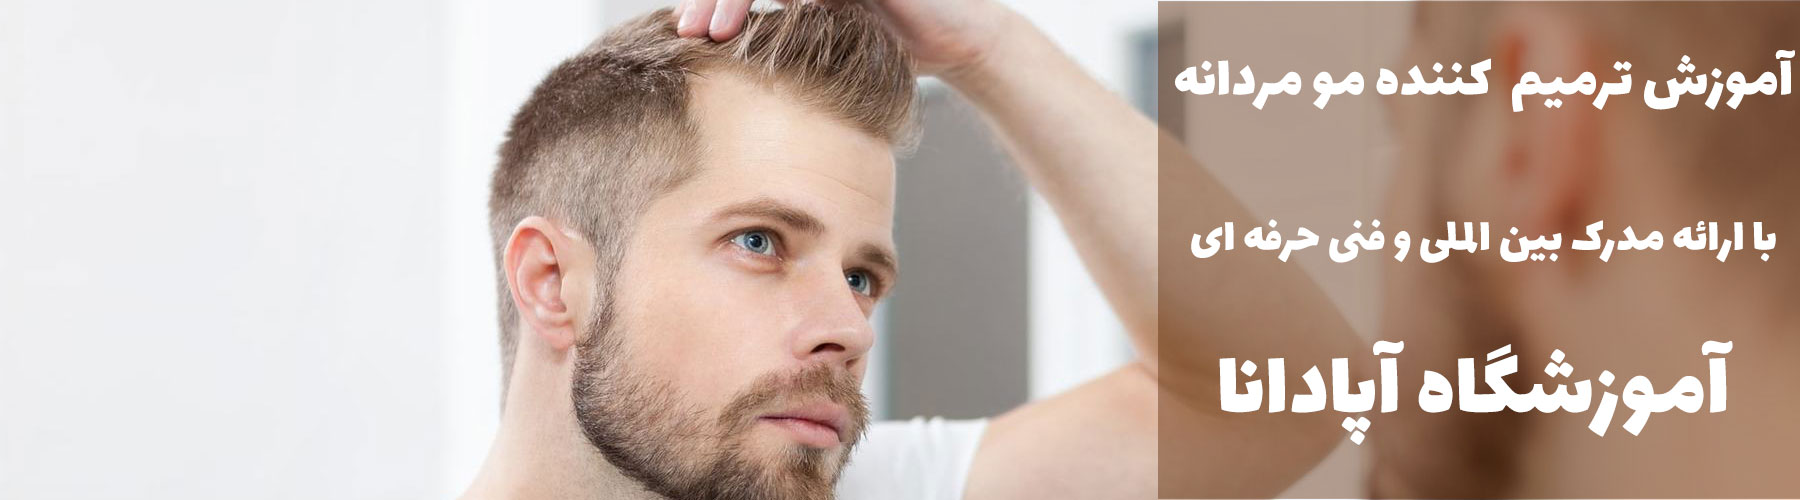 آموزش ترمیم کننده مو مردانه